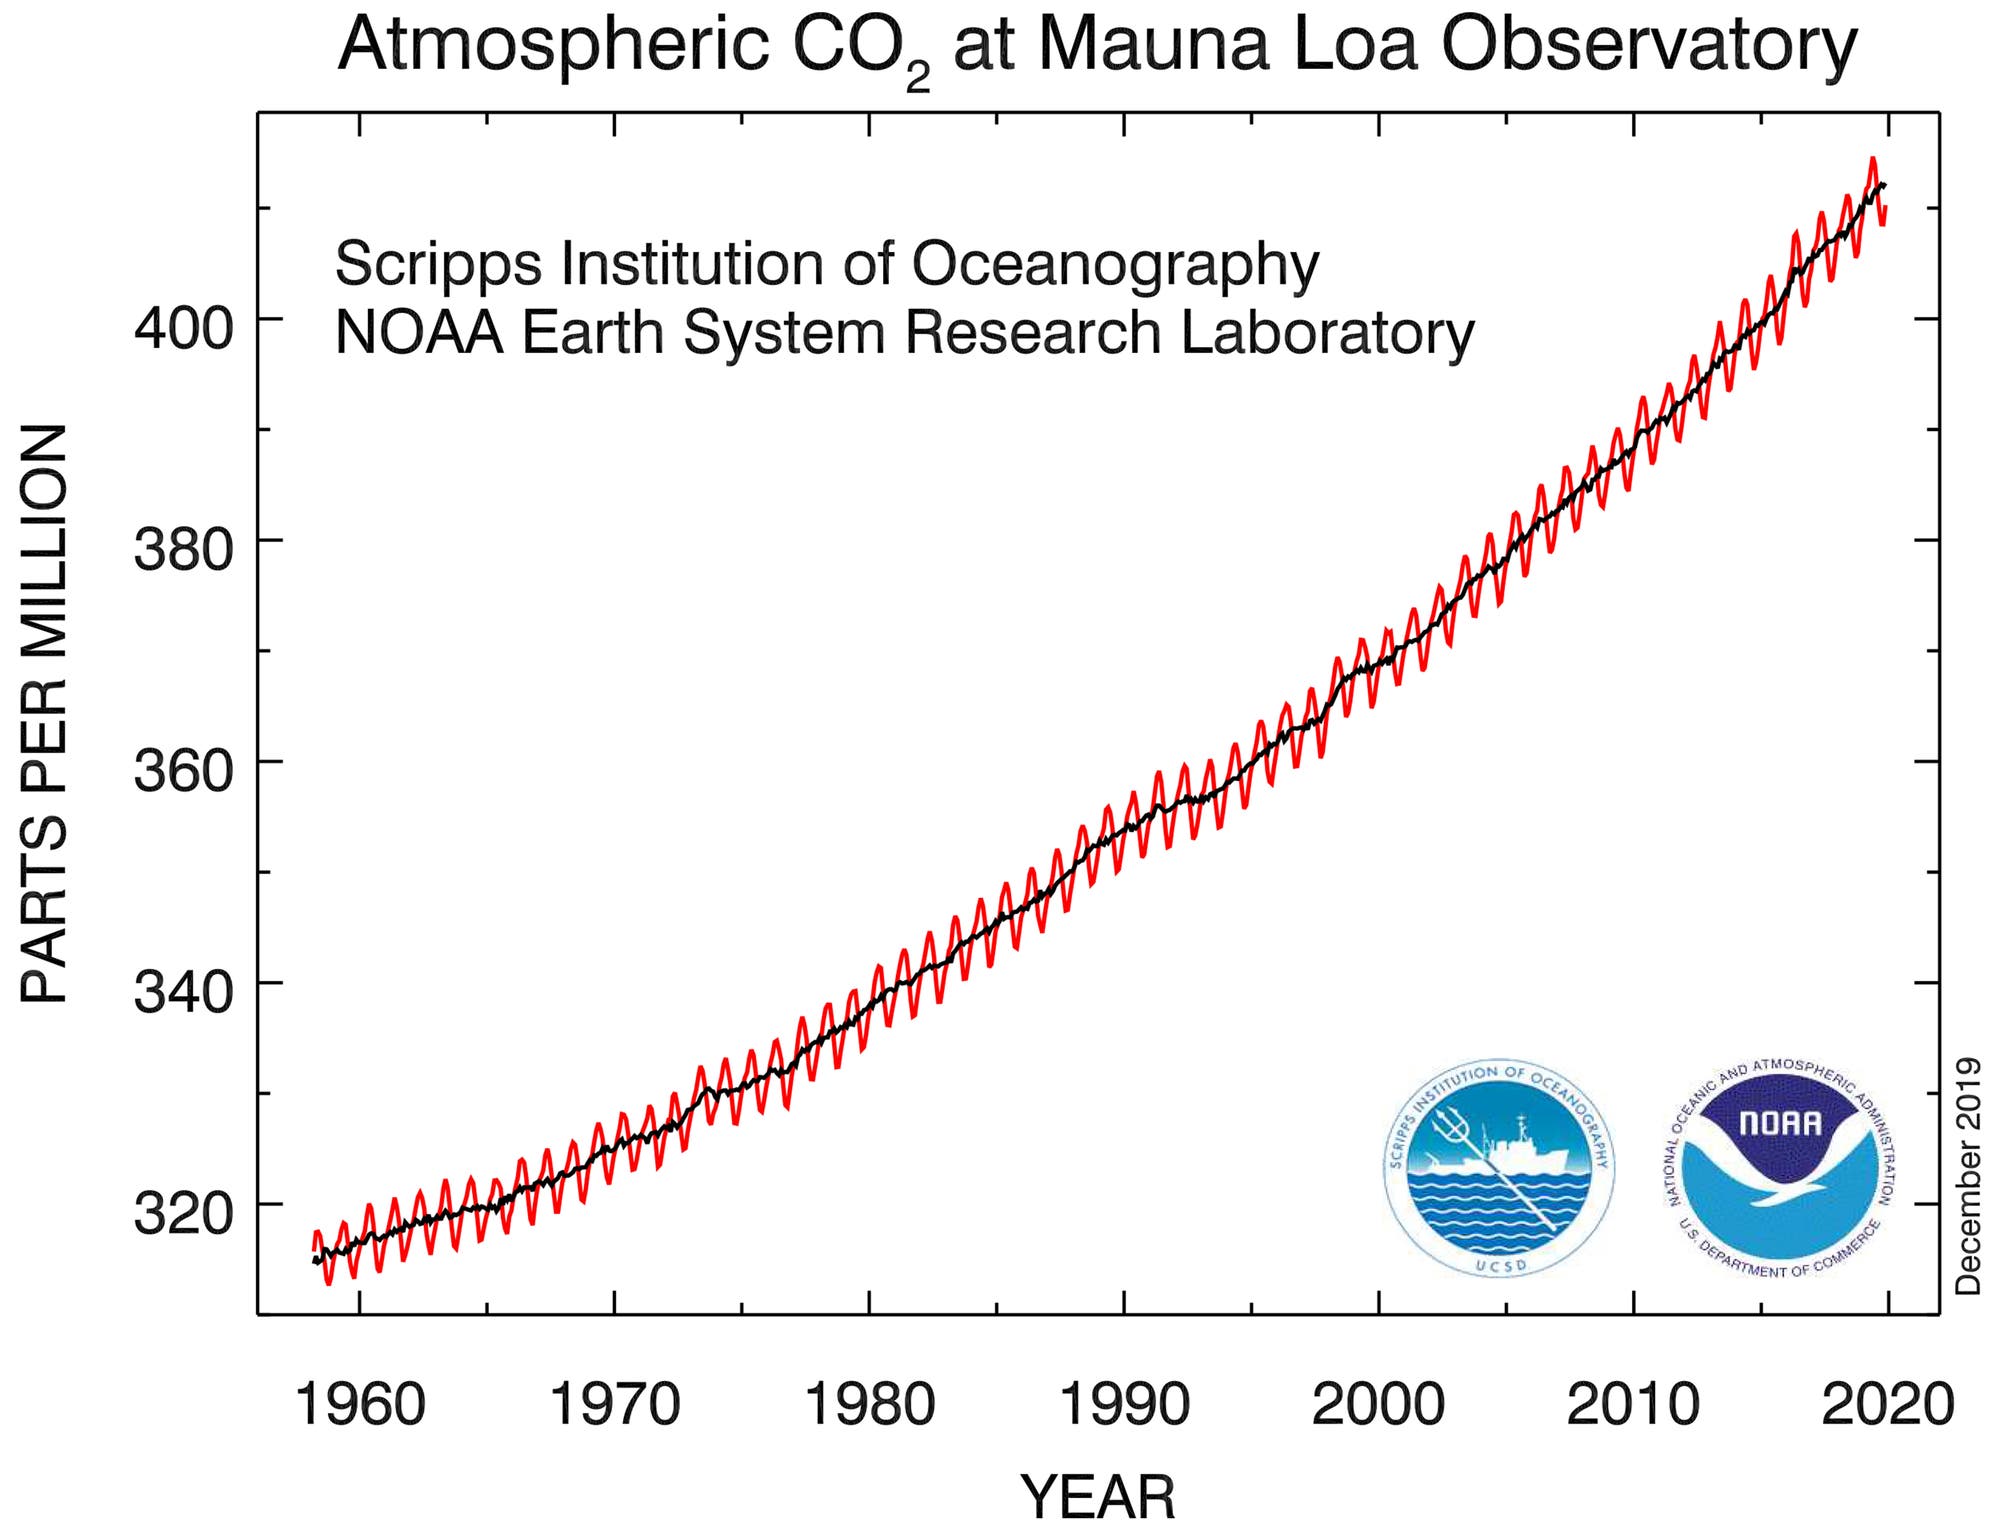 Die ikonische Keeling-Kurve zeigt die steigende Kohlendioxidkonzentration in der Atmosphäre.